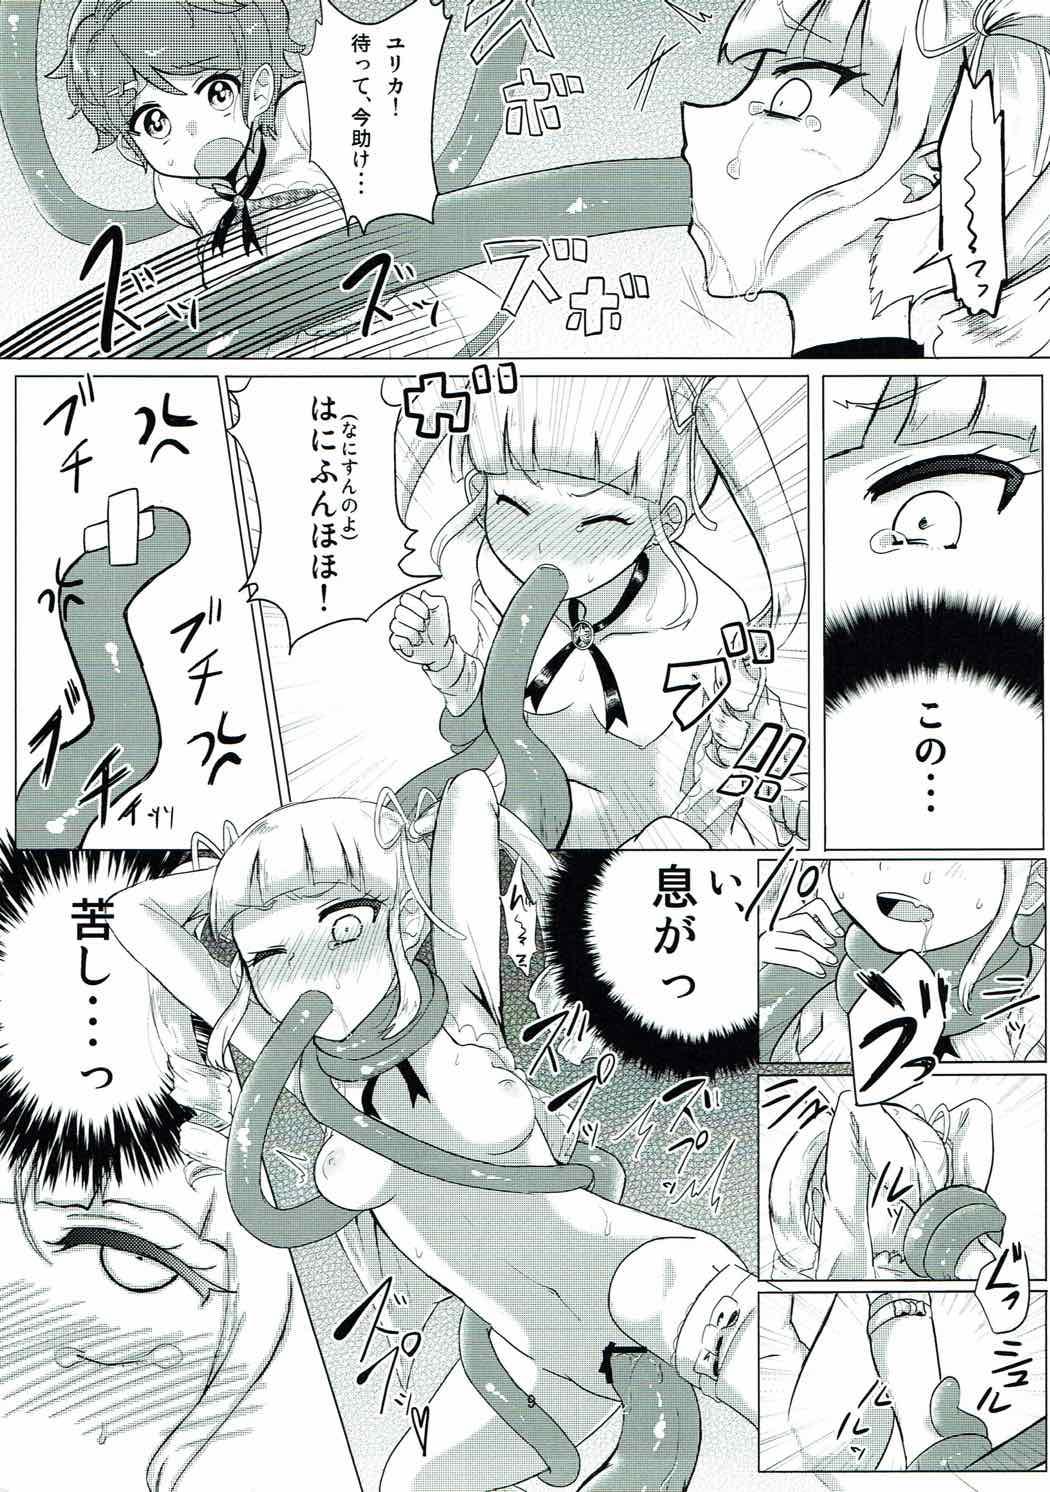 Gonzo ヌルカツ! - Aikatsu Gay Blackhair - Page 10